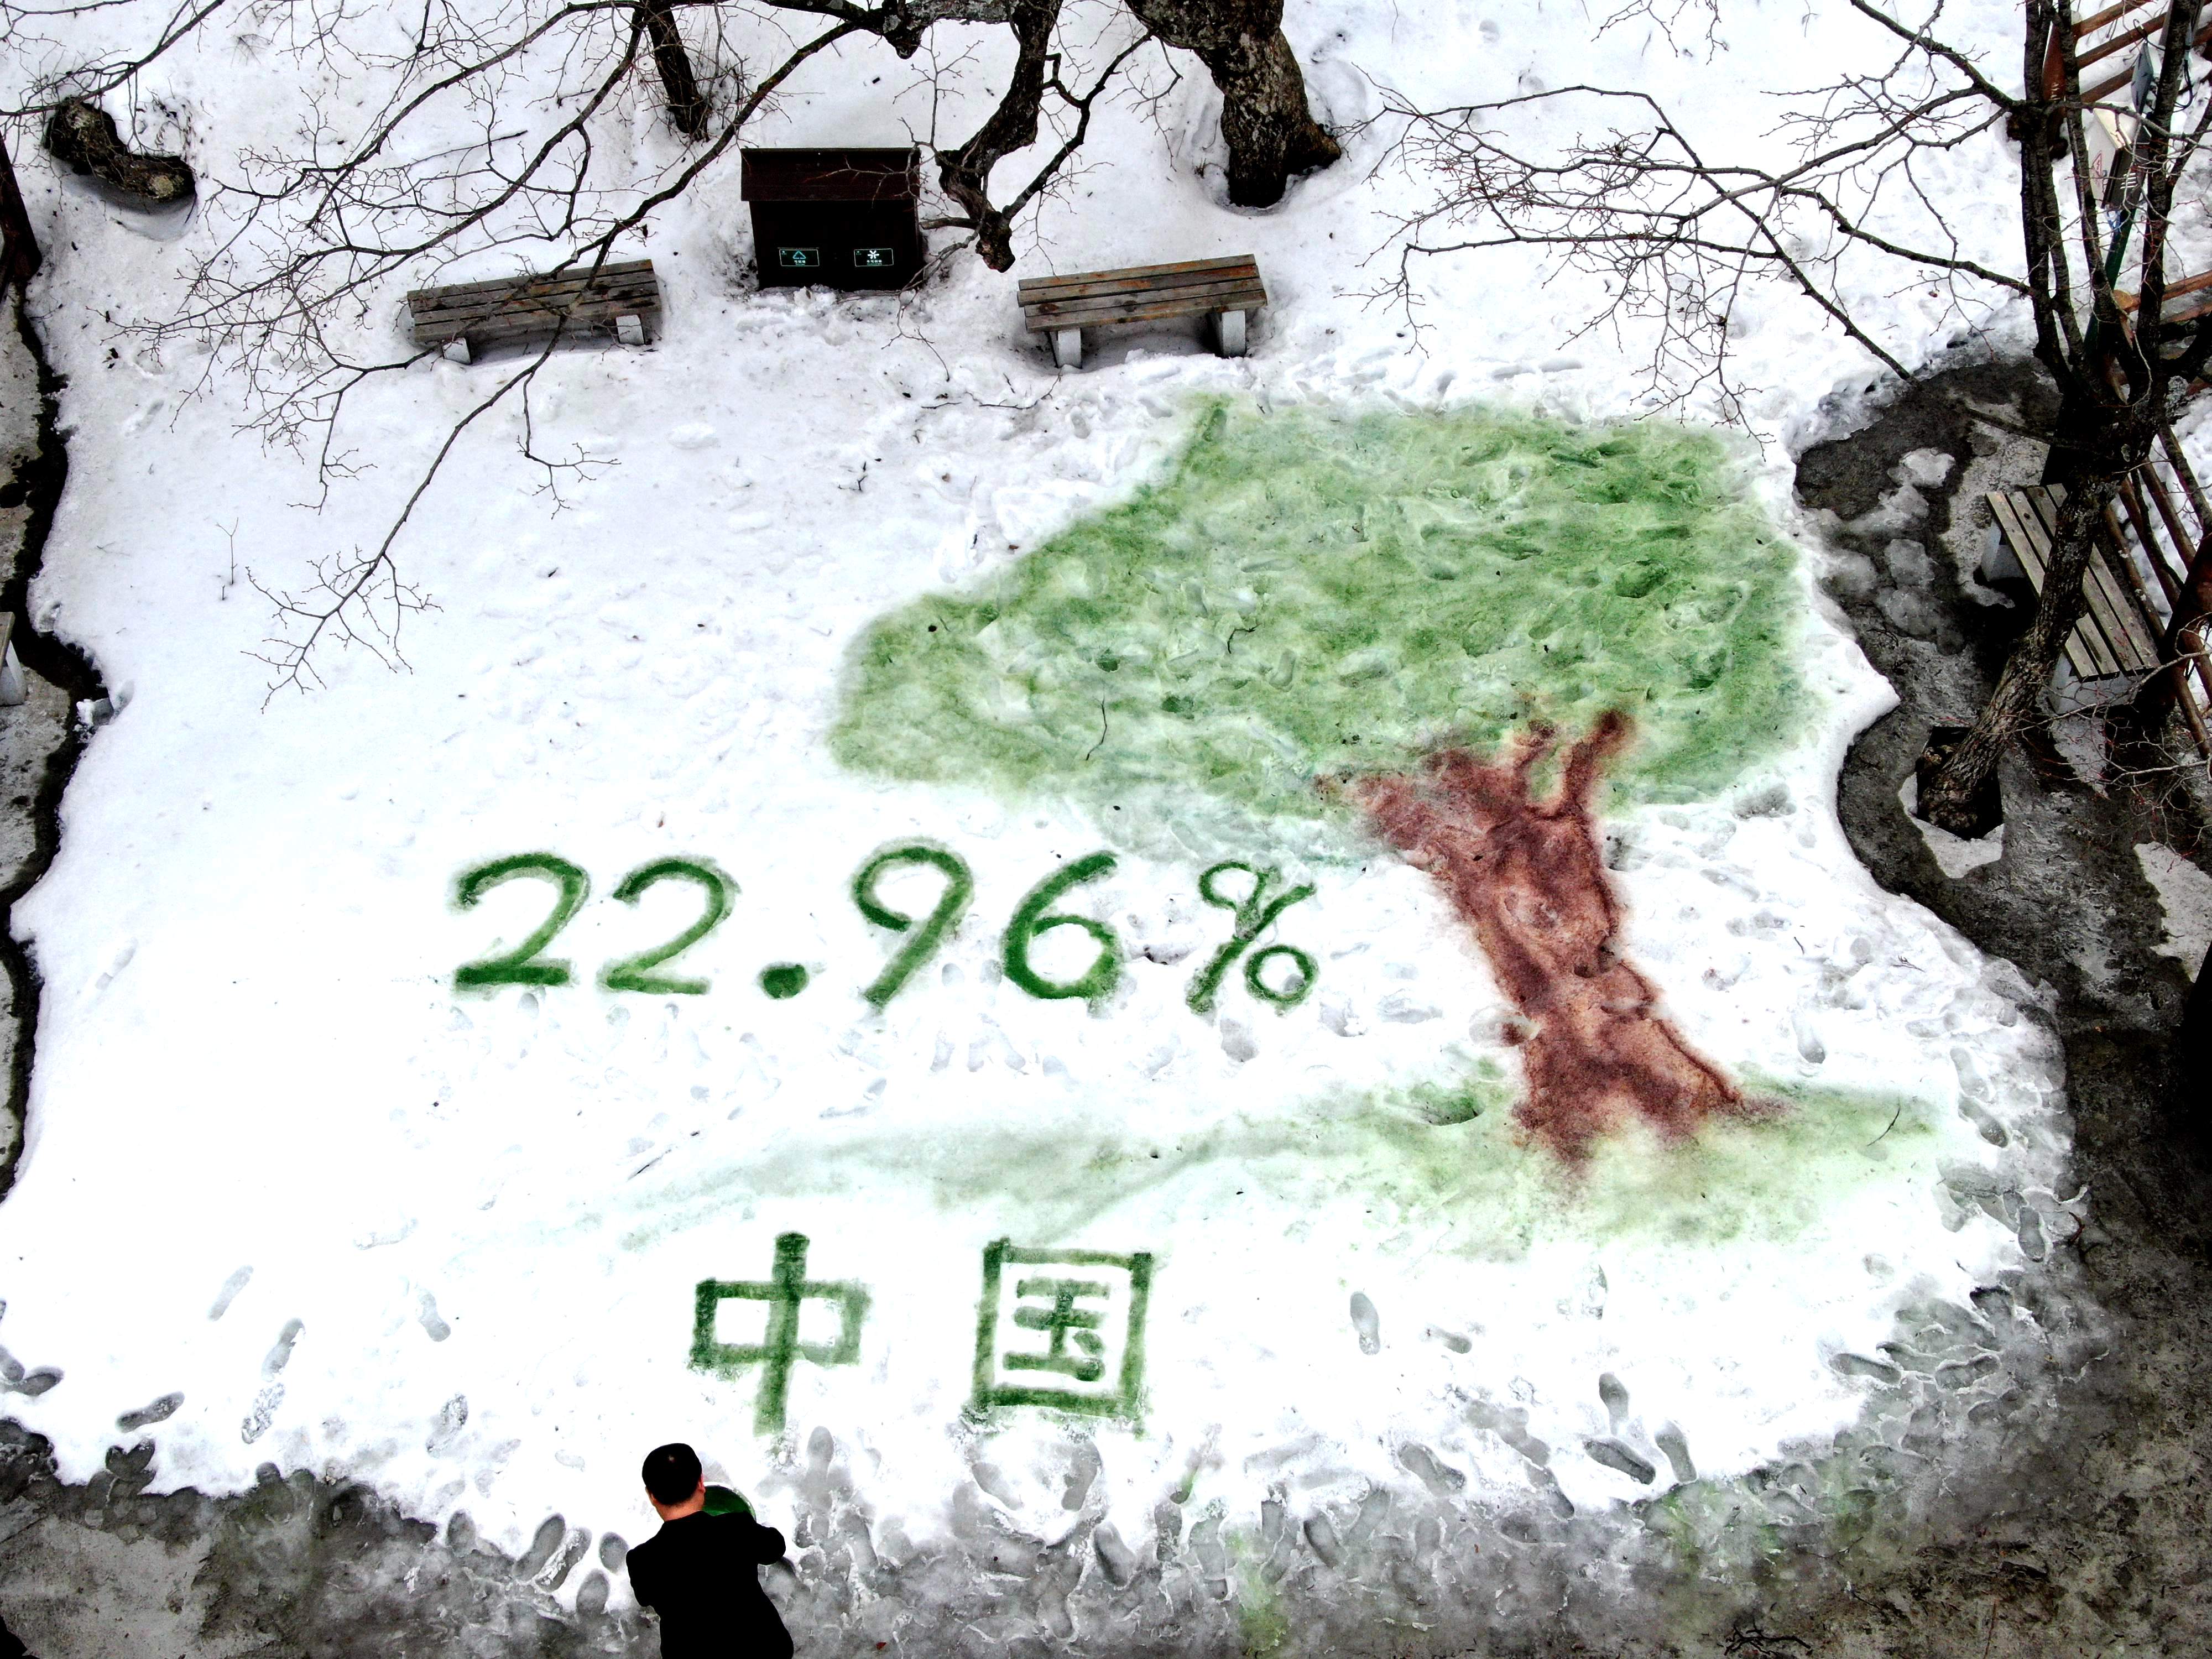 老君山|山间雪地作画纪念中国森林覆盖率达22.96%